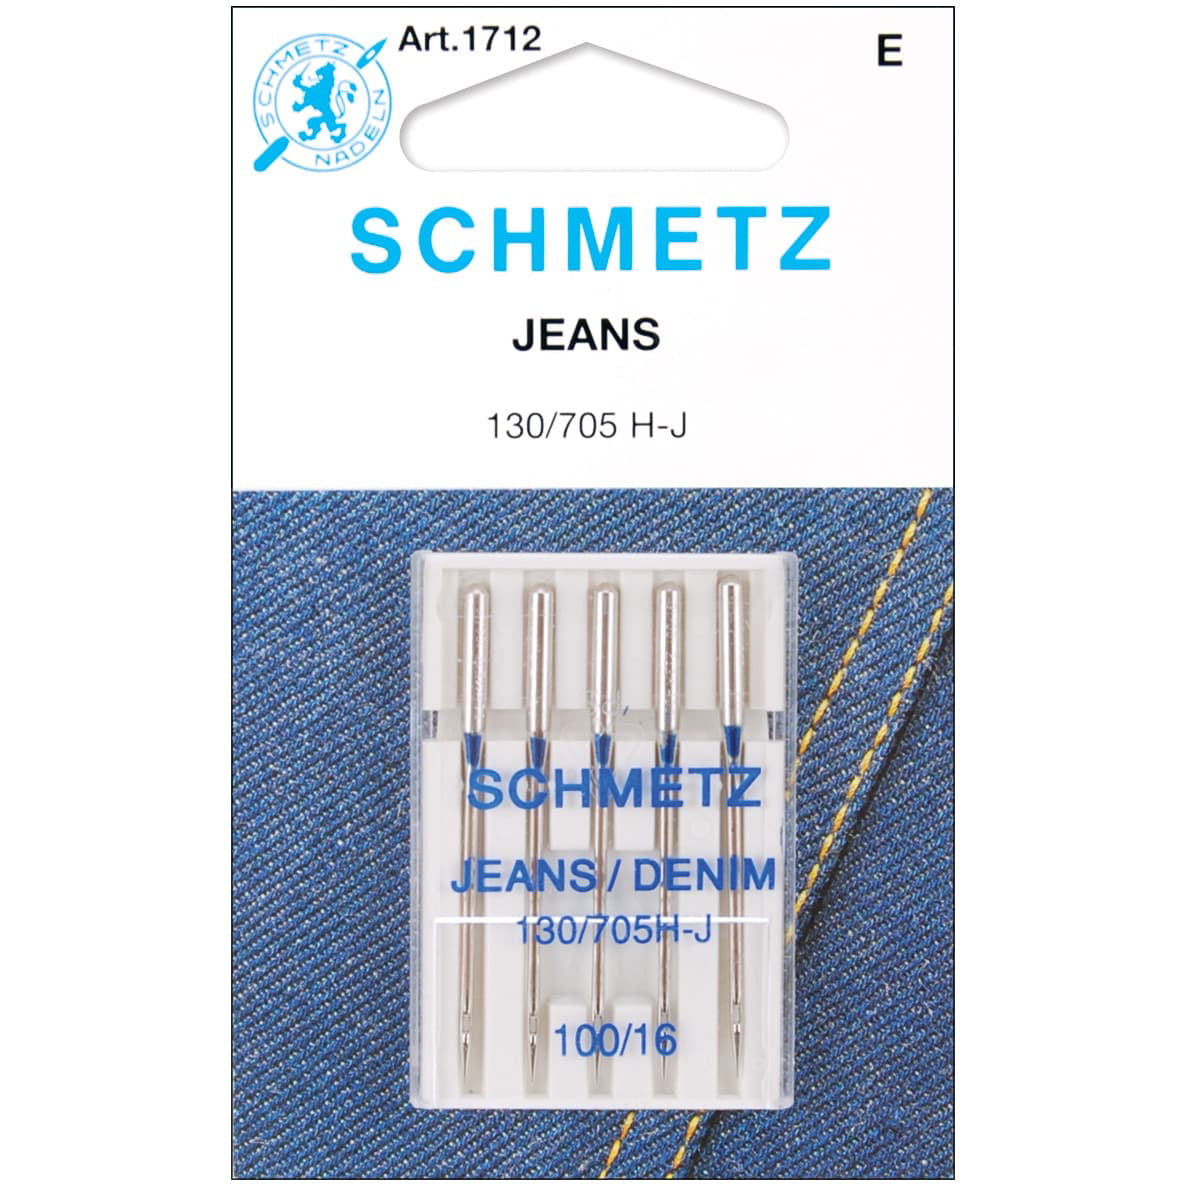 Schmetz 1783 Jeans Denim Sewing Machine Needle Size 110/18 130/705H-J 